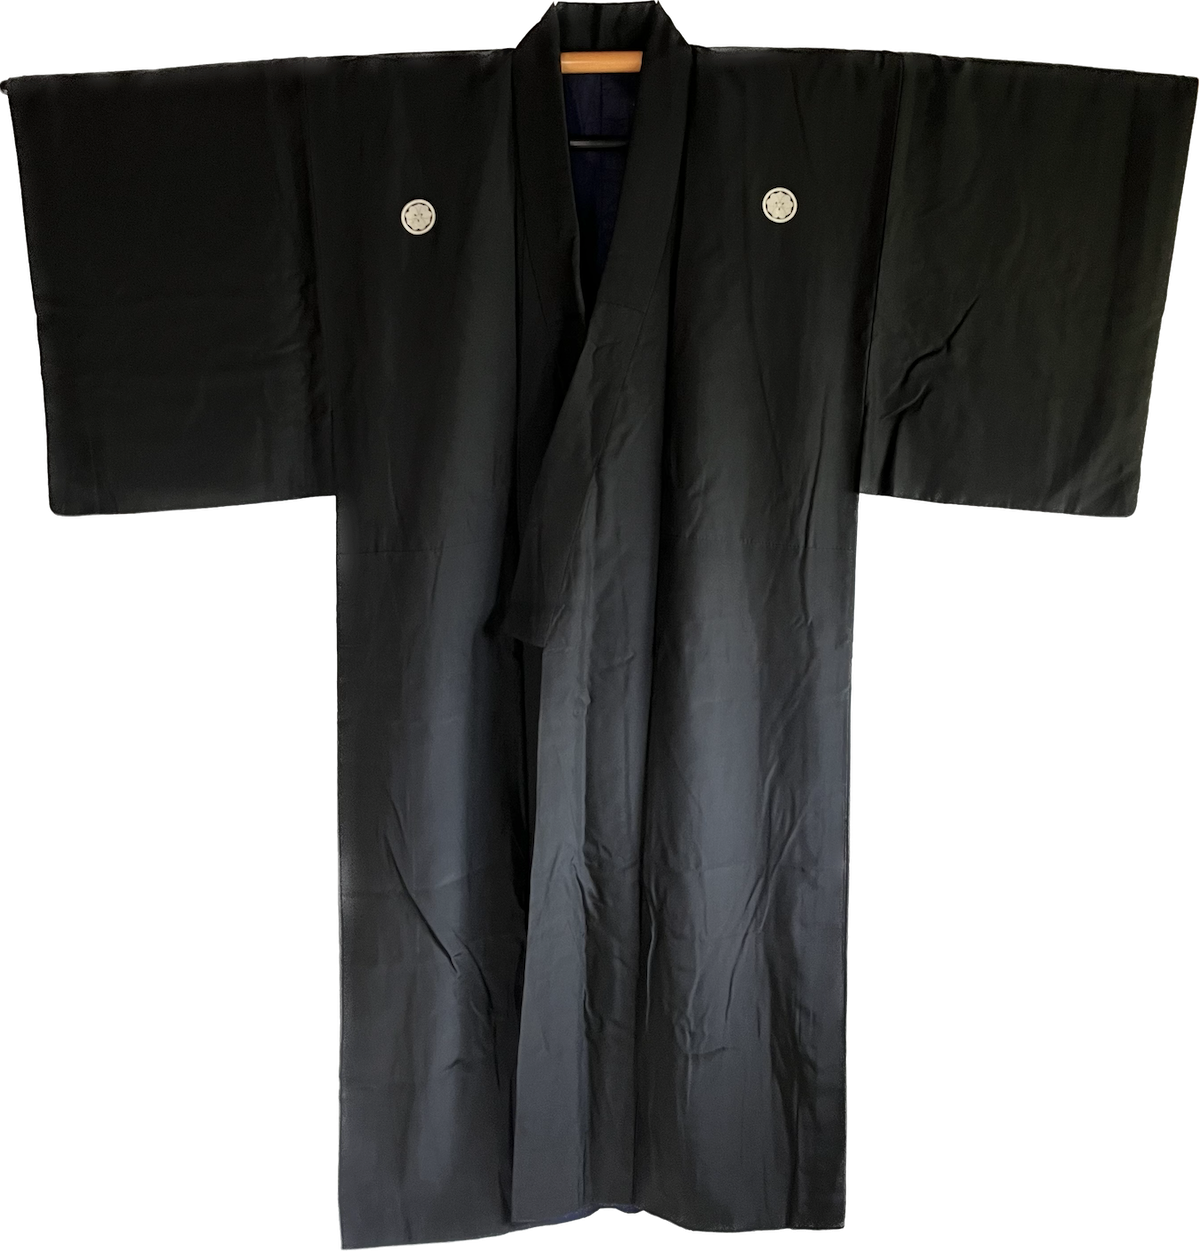 Antique kimono traditionnel japonais soie noire kenkatabami montsuki homme2